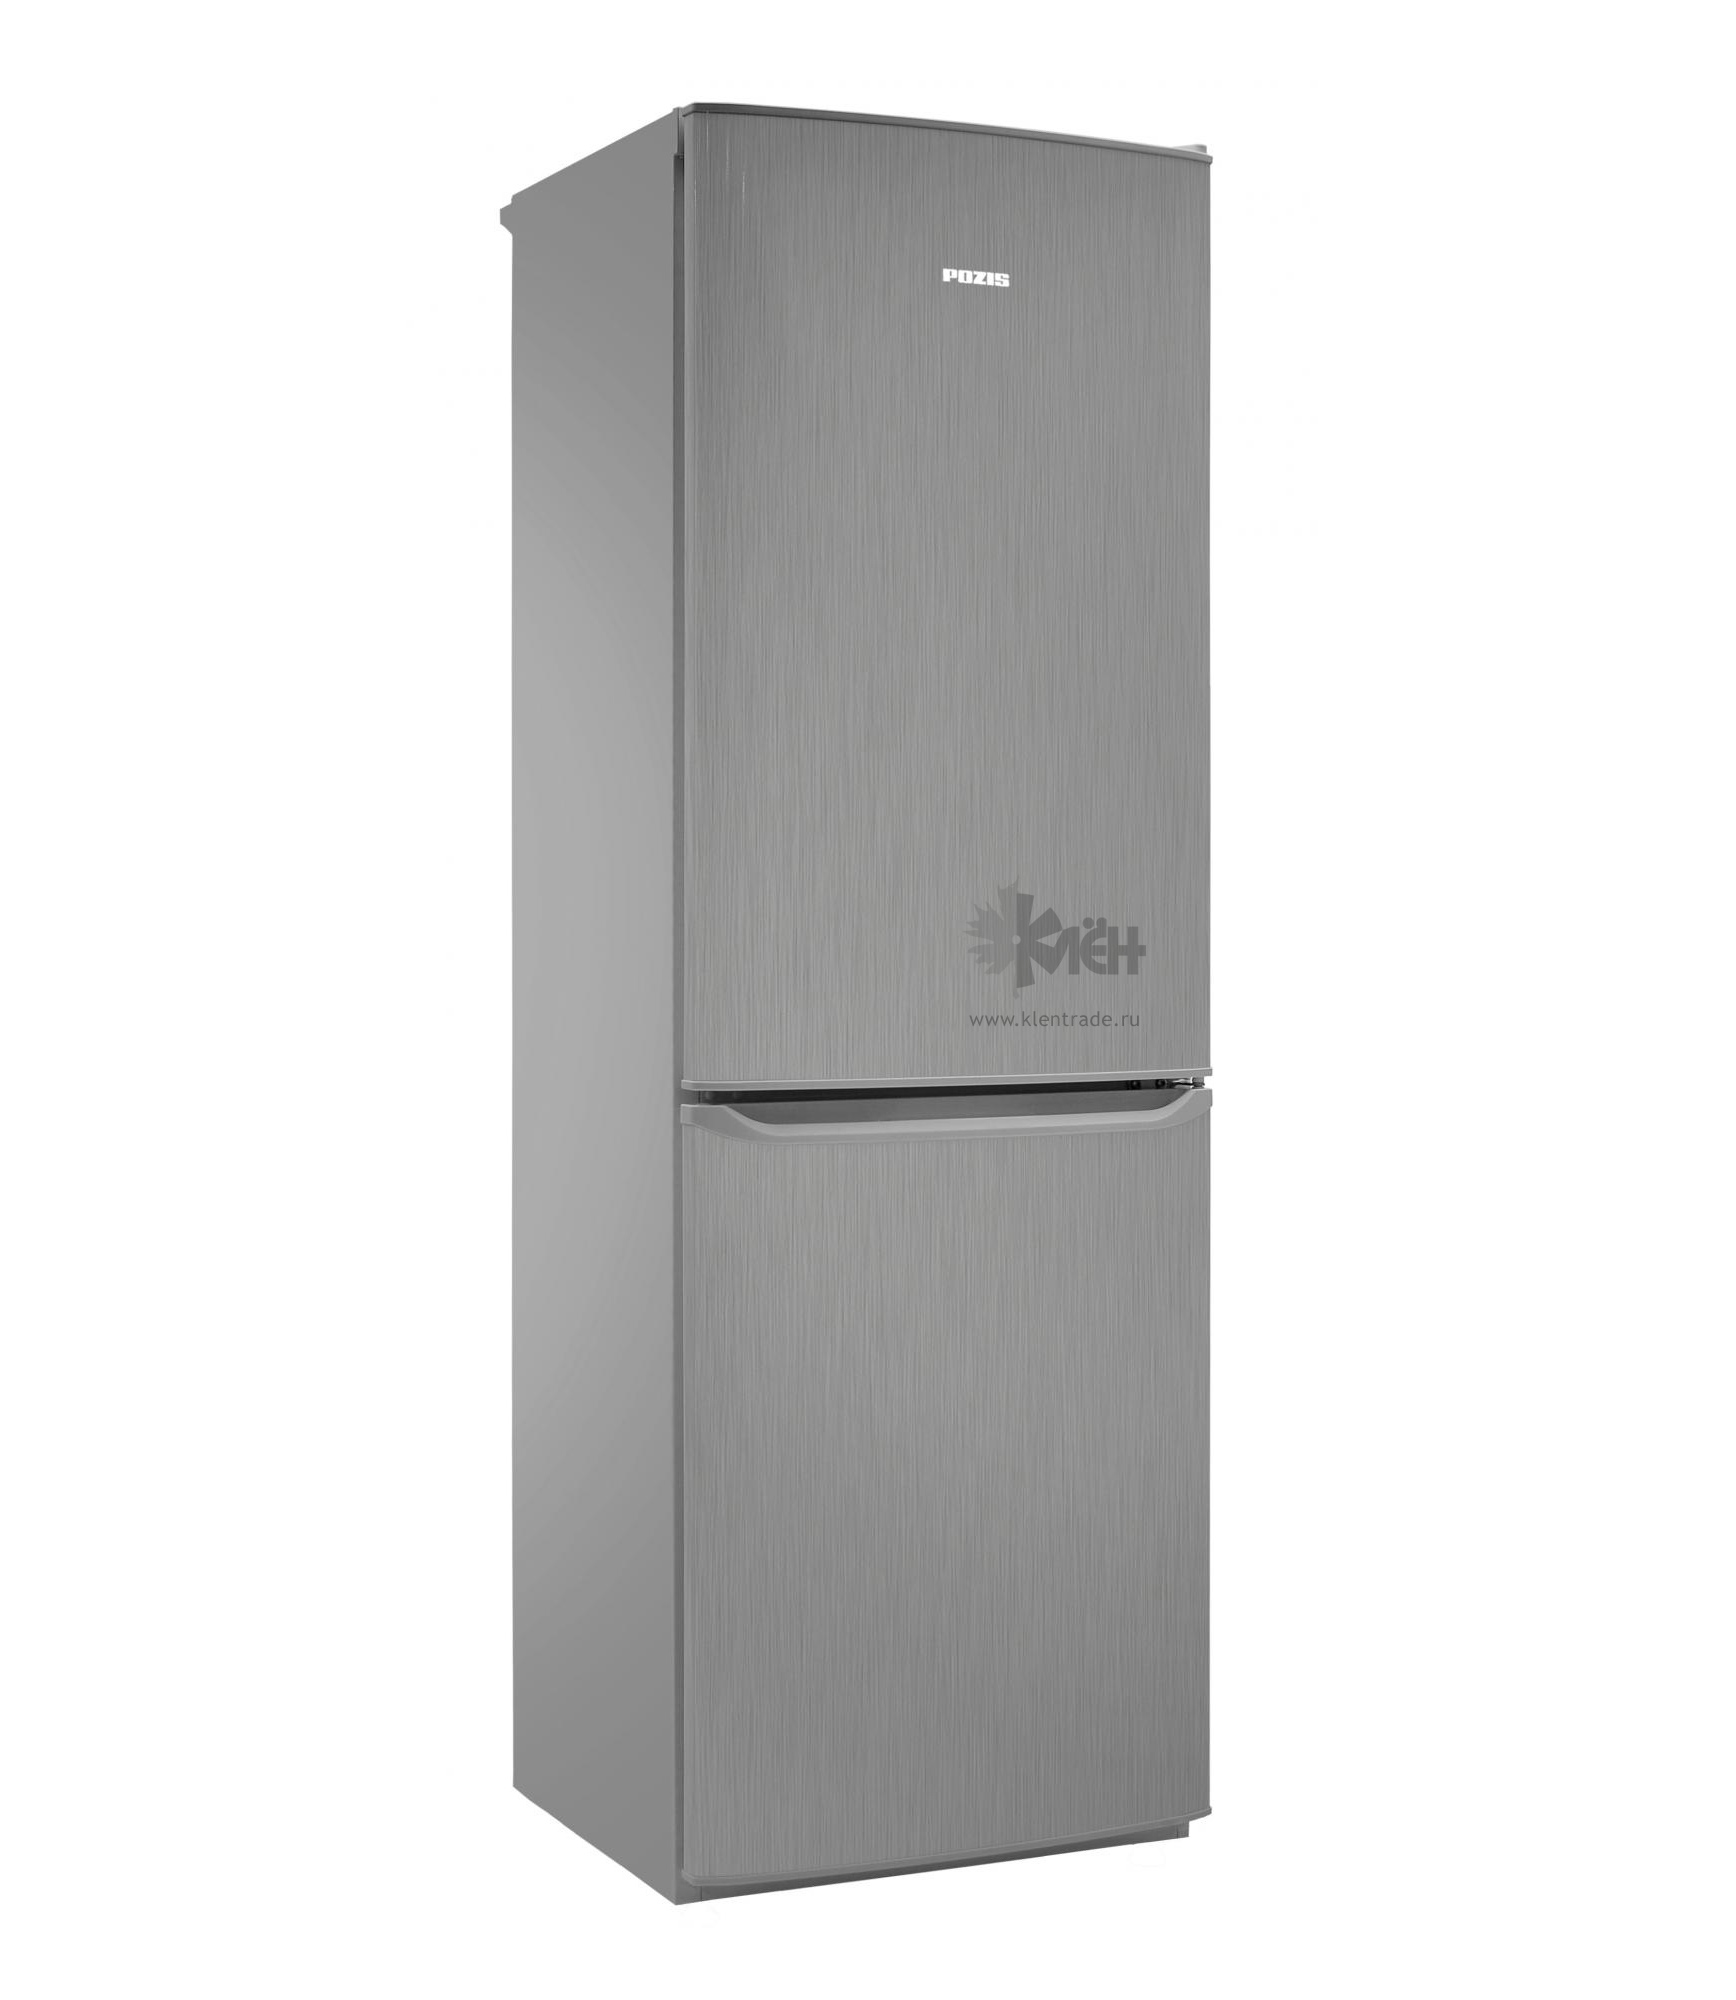 Холодильники no frost купить в москве. Холодильник Сименс kg39. Холодильник Haier cef537asd. Холодильник Haier cef537asd, серебристый. Холодильник Сименс двухкамерный kg 39.